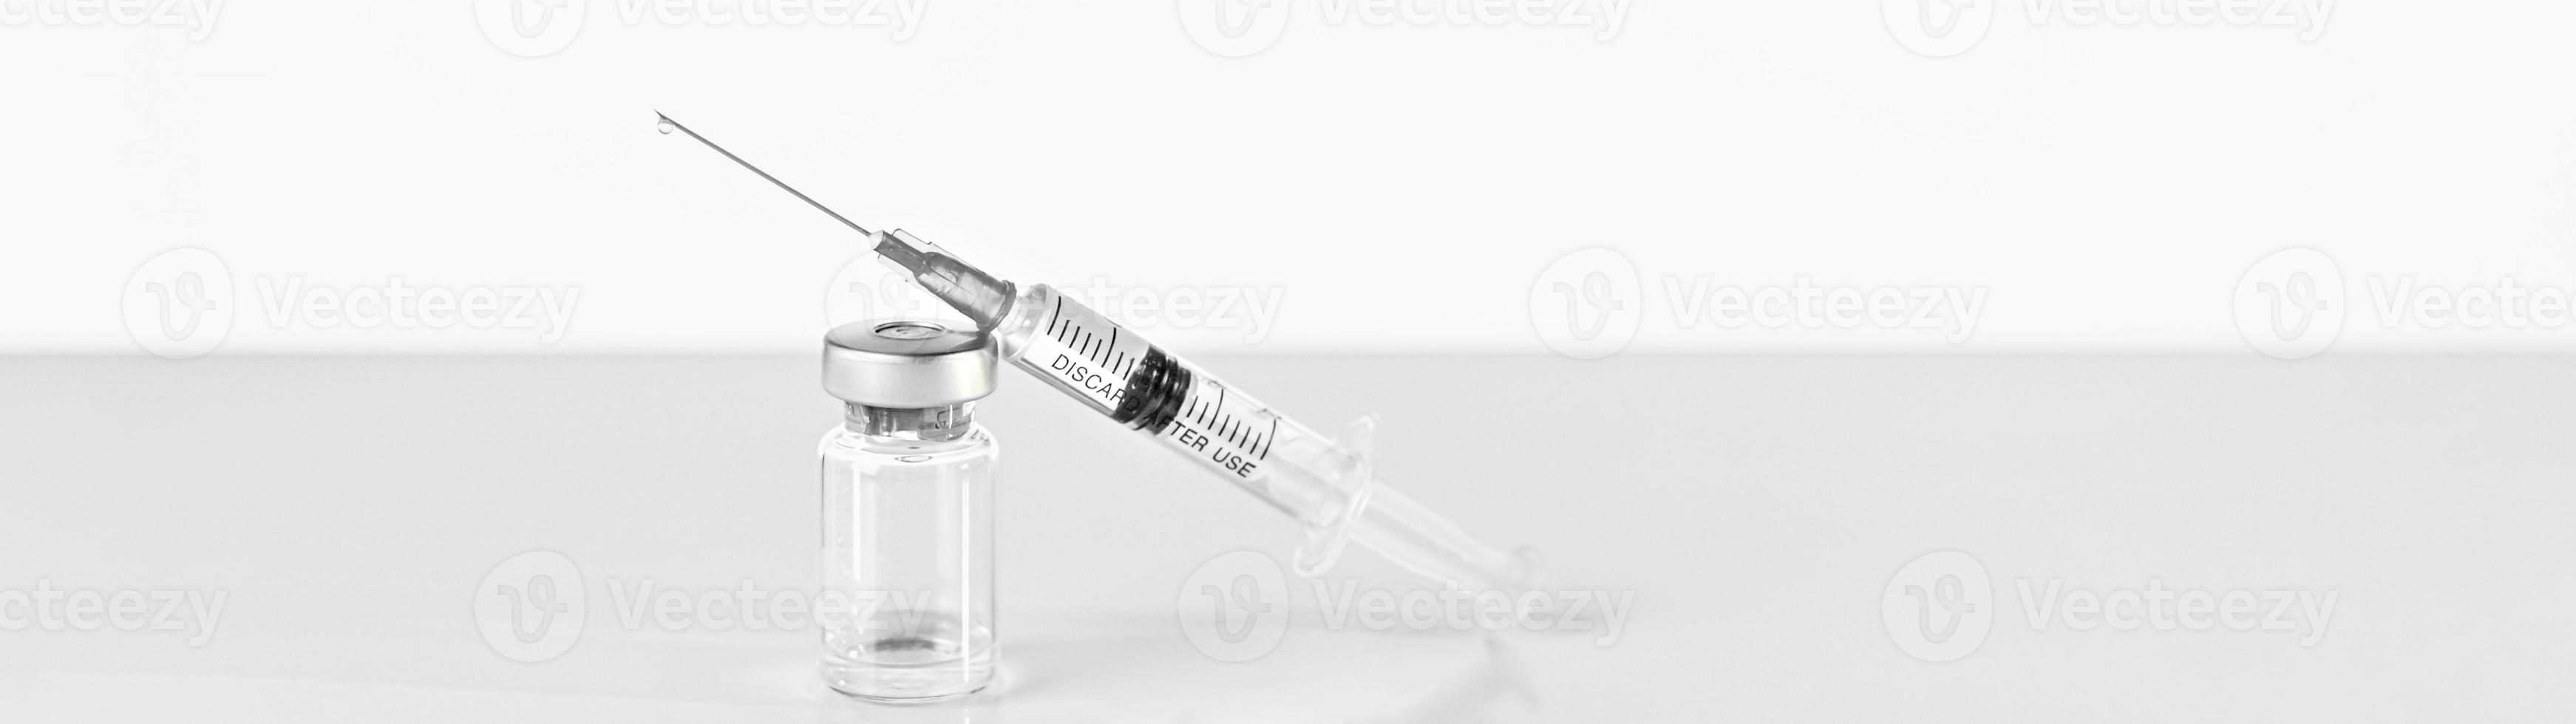 Spritze und Durchstechflasche mit Coronavirus-Impfstoff, Injektionsfläschchendosis auf grauem Hintergrund. Prävention, medizinisches Konzept, Covid-19-Impfung. foto